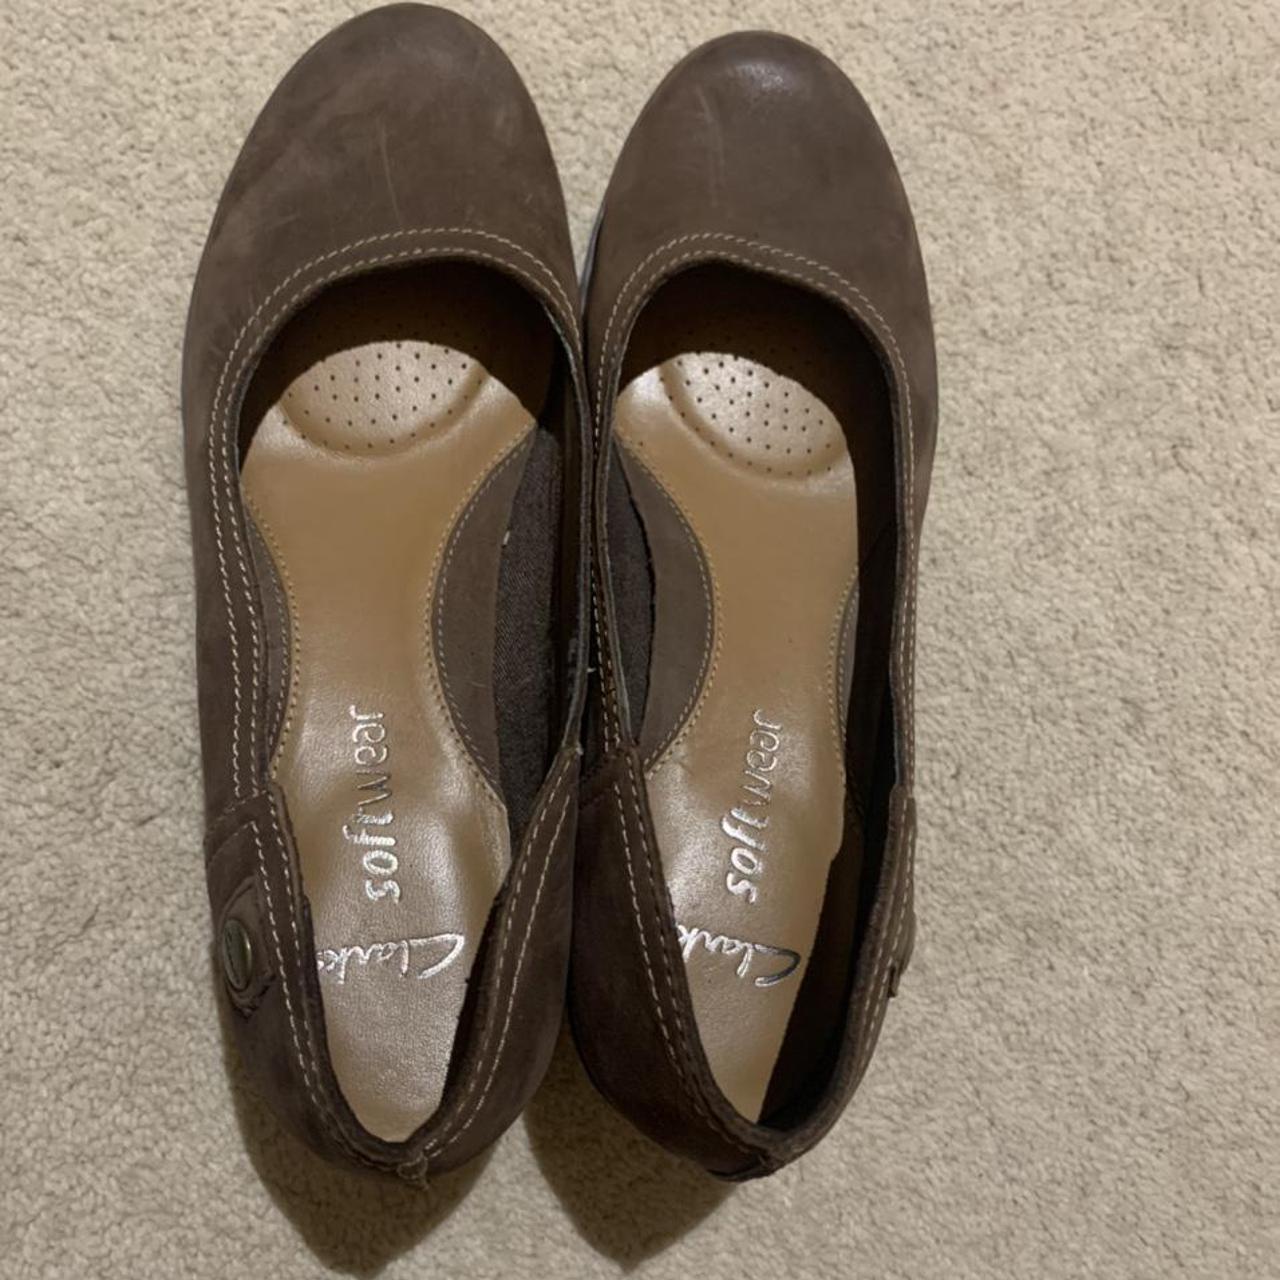 Clarks softwear wedge shoe in brown leather.... Depop